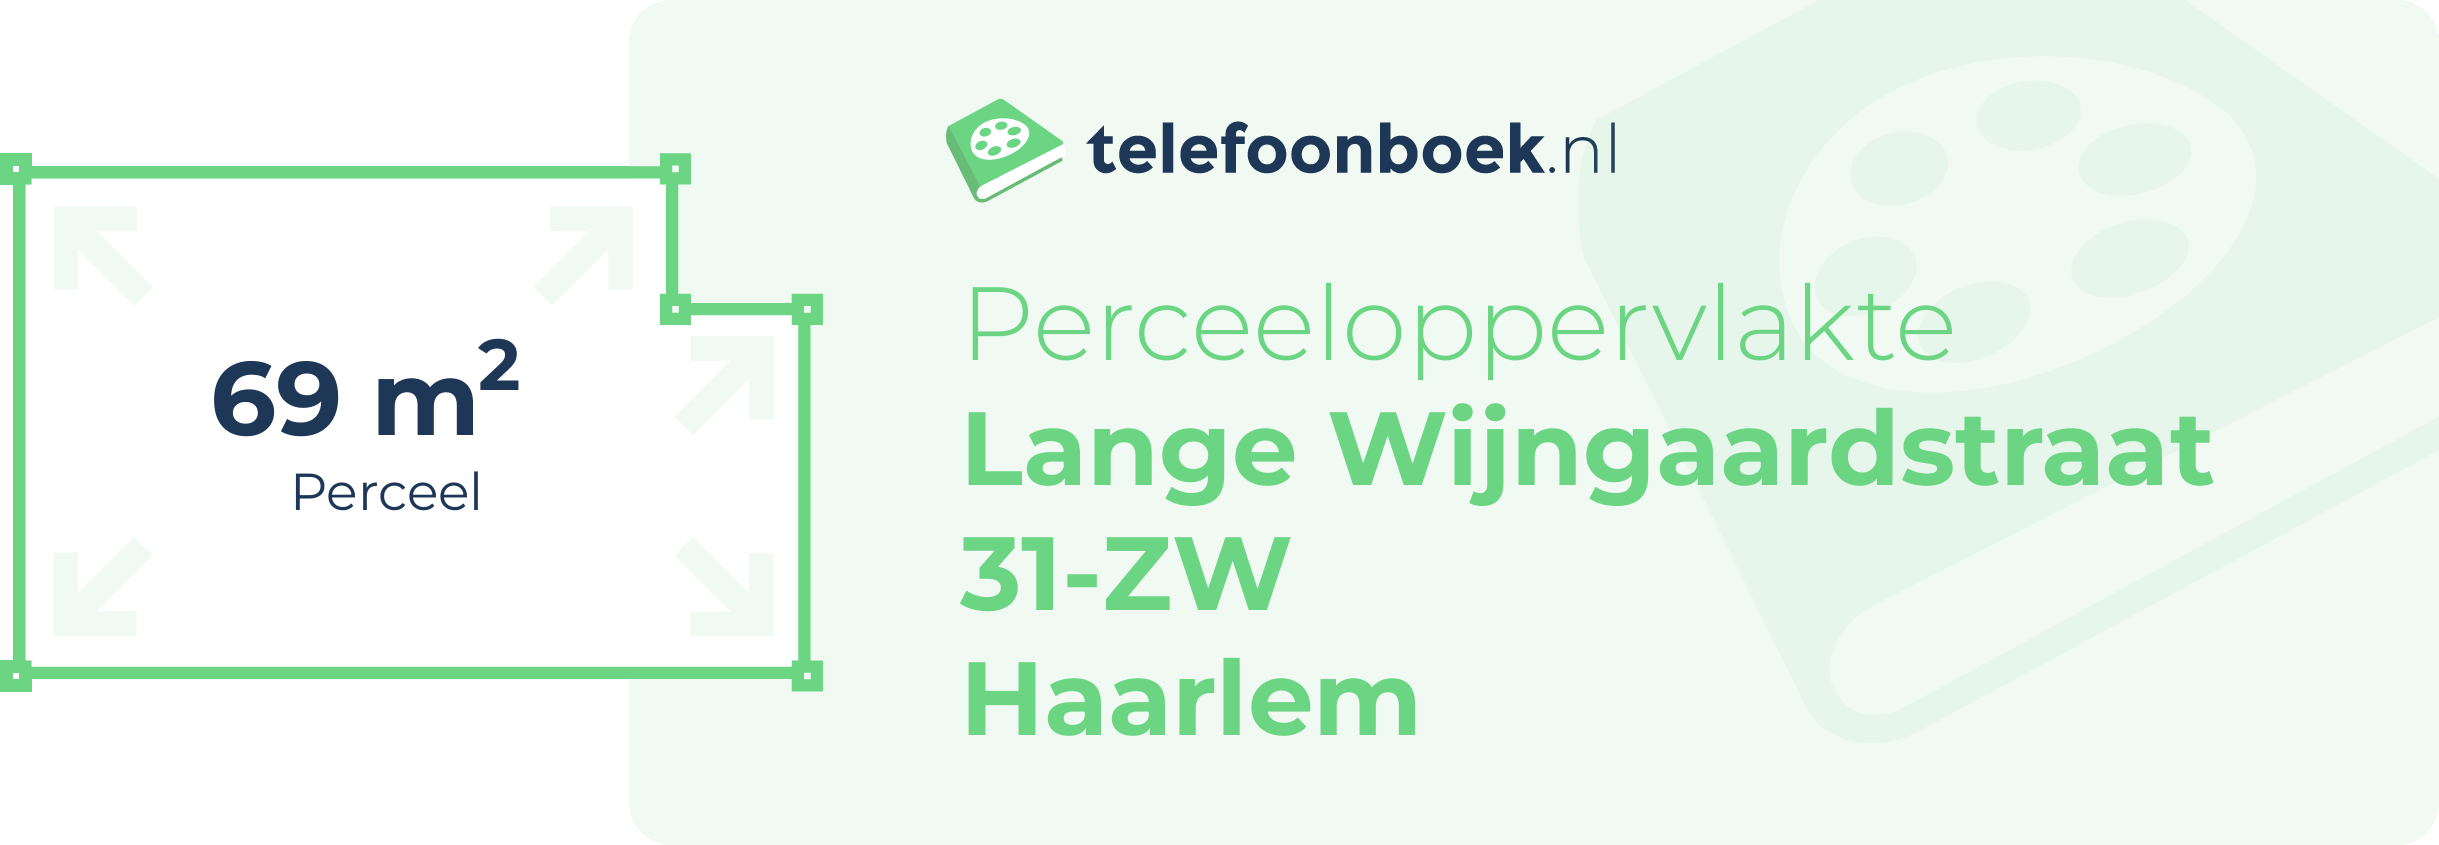 Perceeloppervlakte Lange Wijngaardstraat 31-ZW Haarlem